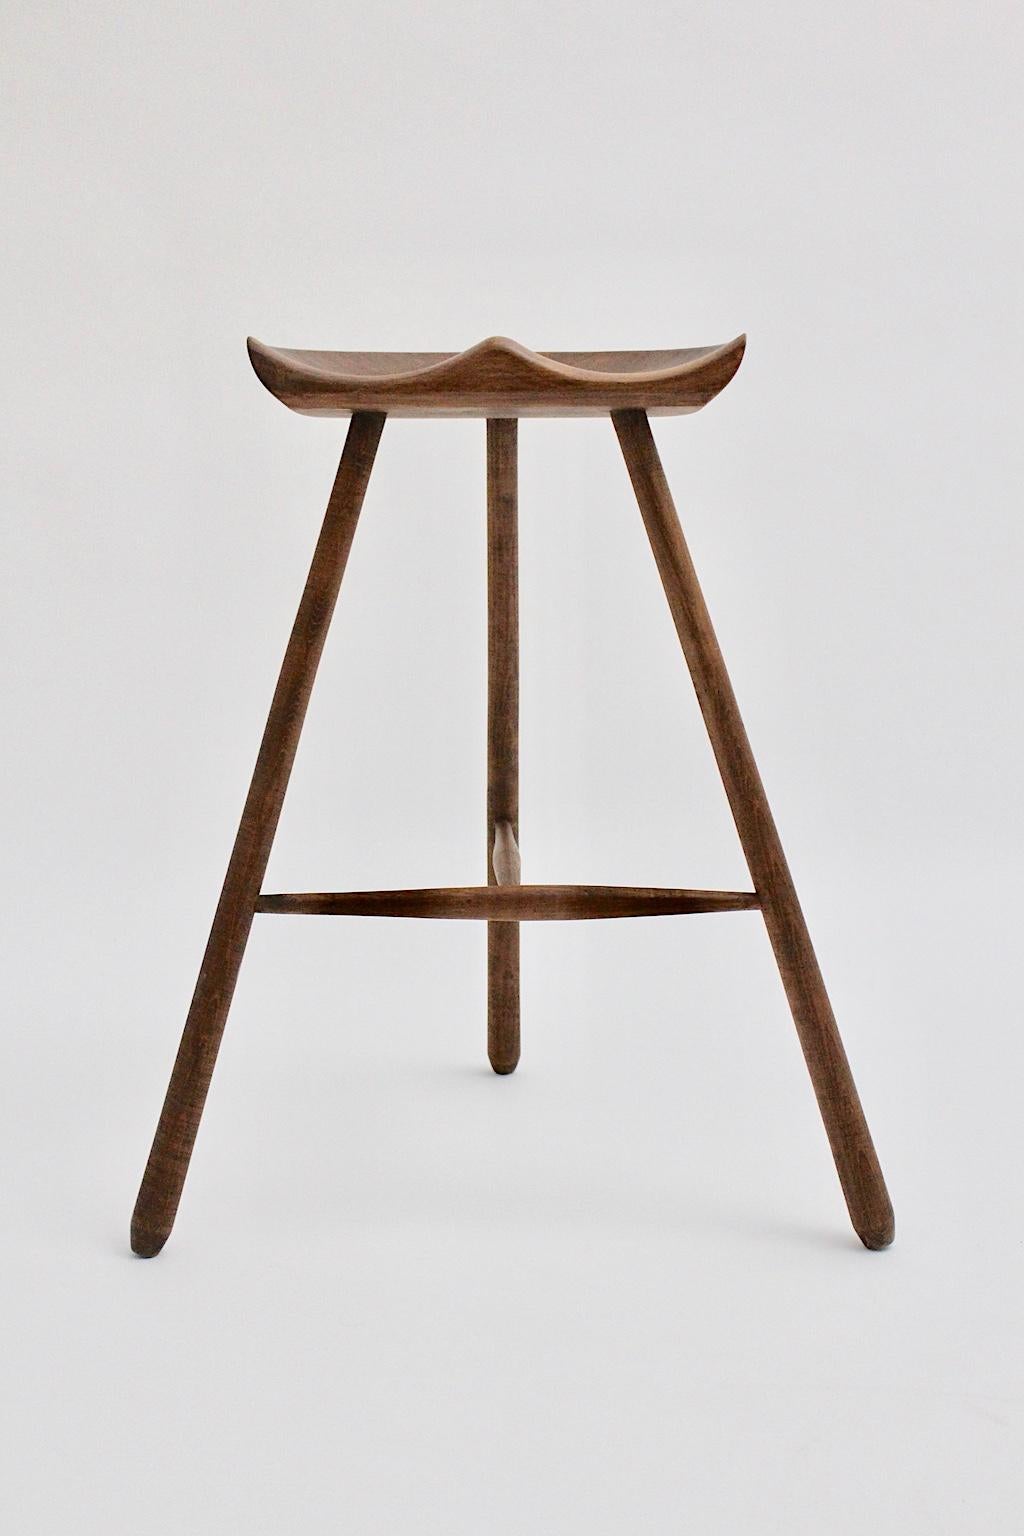 Skandinavisch-moderner dreibeiniger Teakholzhocker aus massivem Teakholz, entworfen von Arne Hovmand-Olsen in den 1960er Jahren, hergestellt in Dänemark. Drei gespreizte Füße, die miteinander verbunden sind, und eine handgeschnitzte Sitzfläche